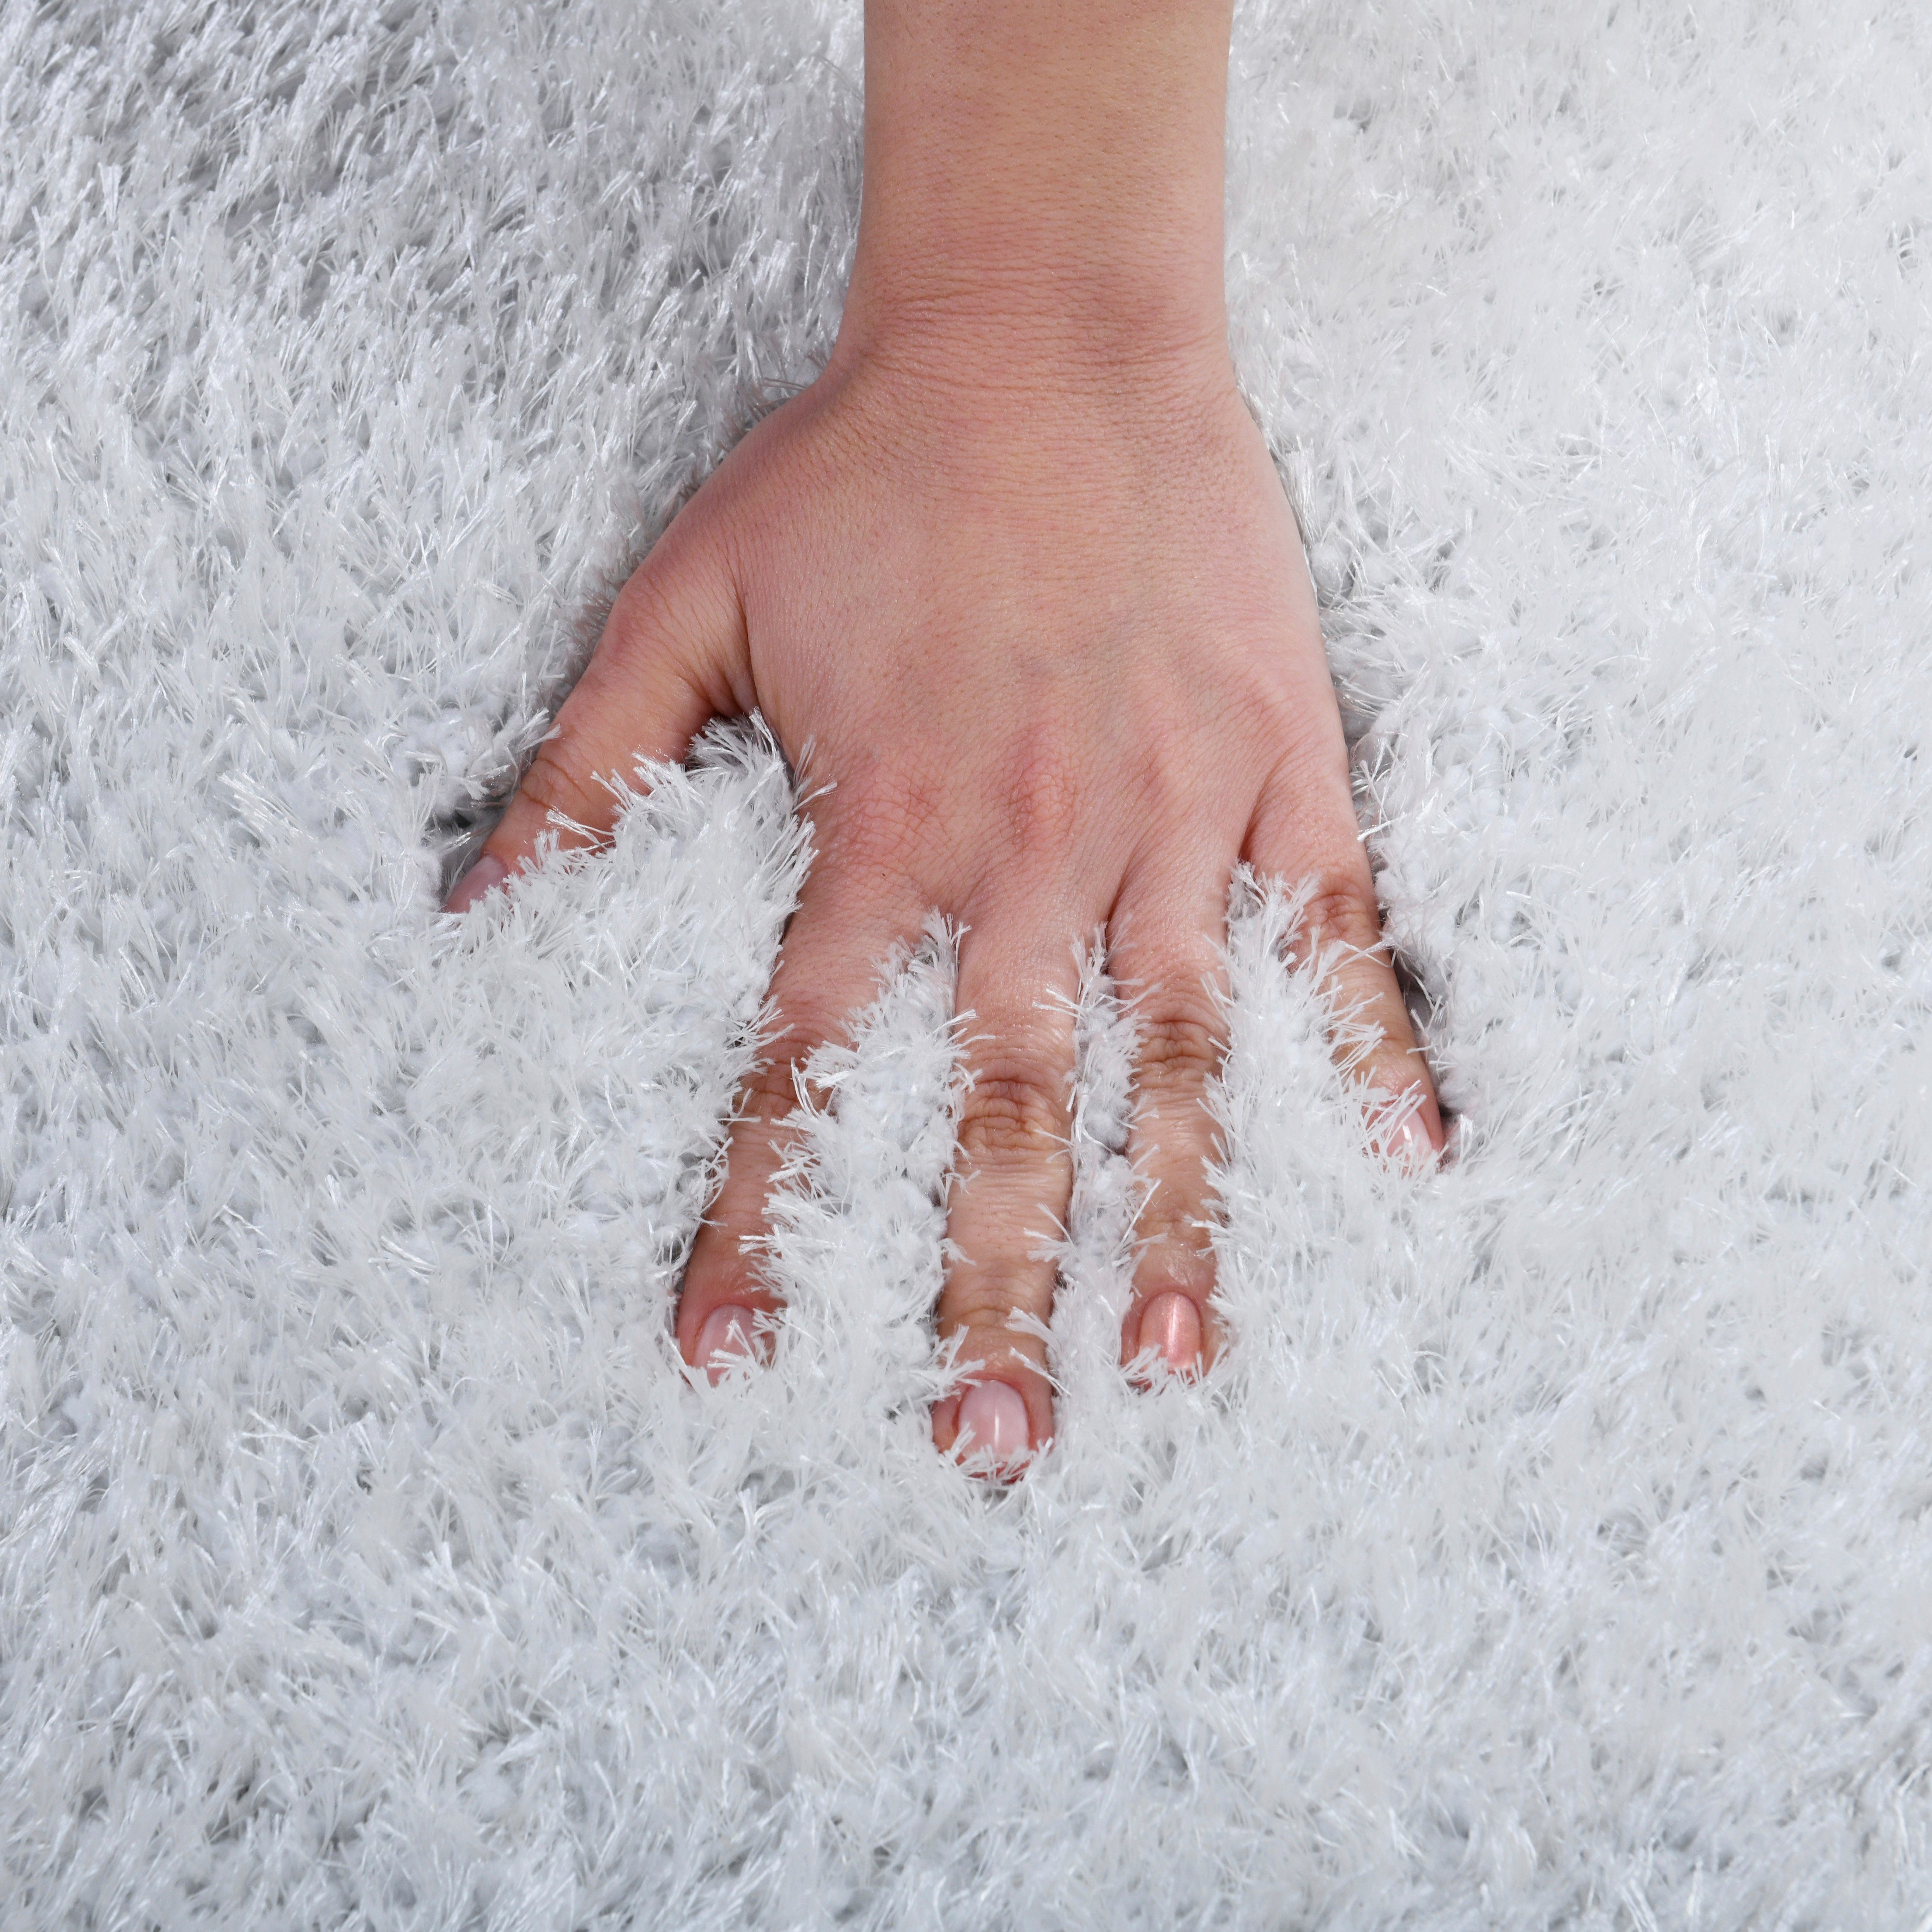 Hochflor-Teppich Malin, besonders einfarbig, Uni-Farben, Höhe: in 43 mm, leicht weiß glänzend, weich Shaggy Home rechteckig, affaire